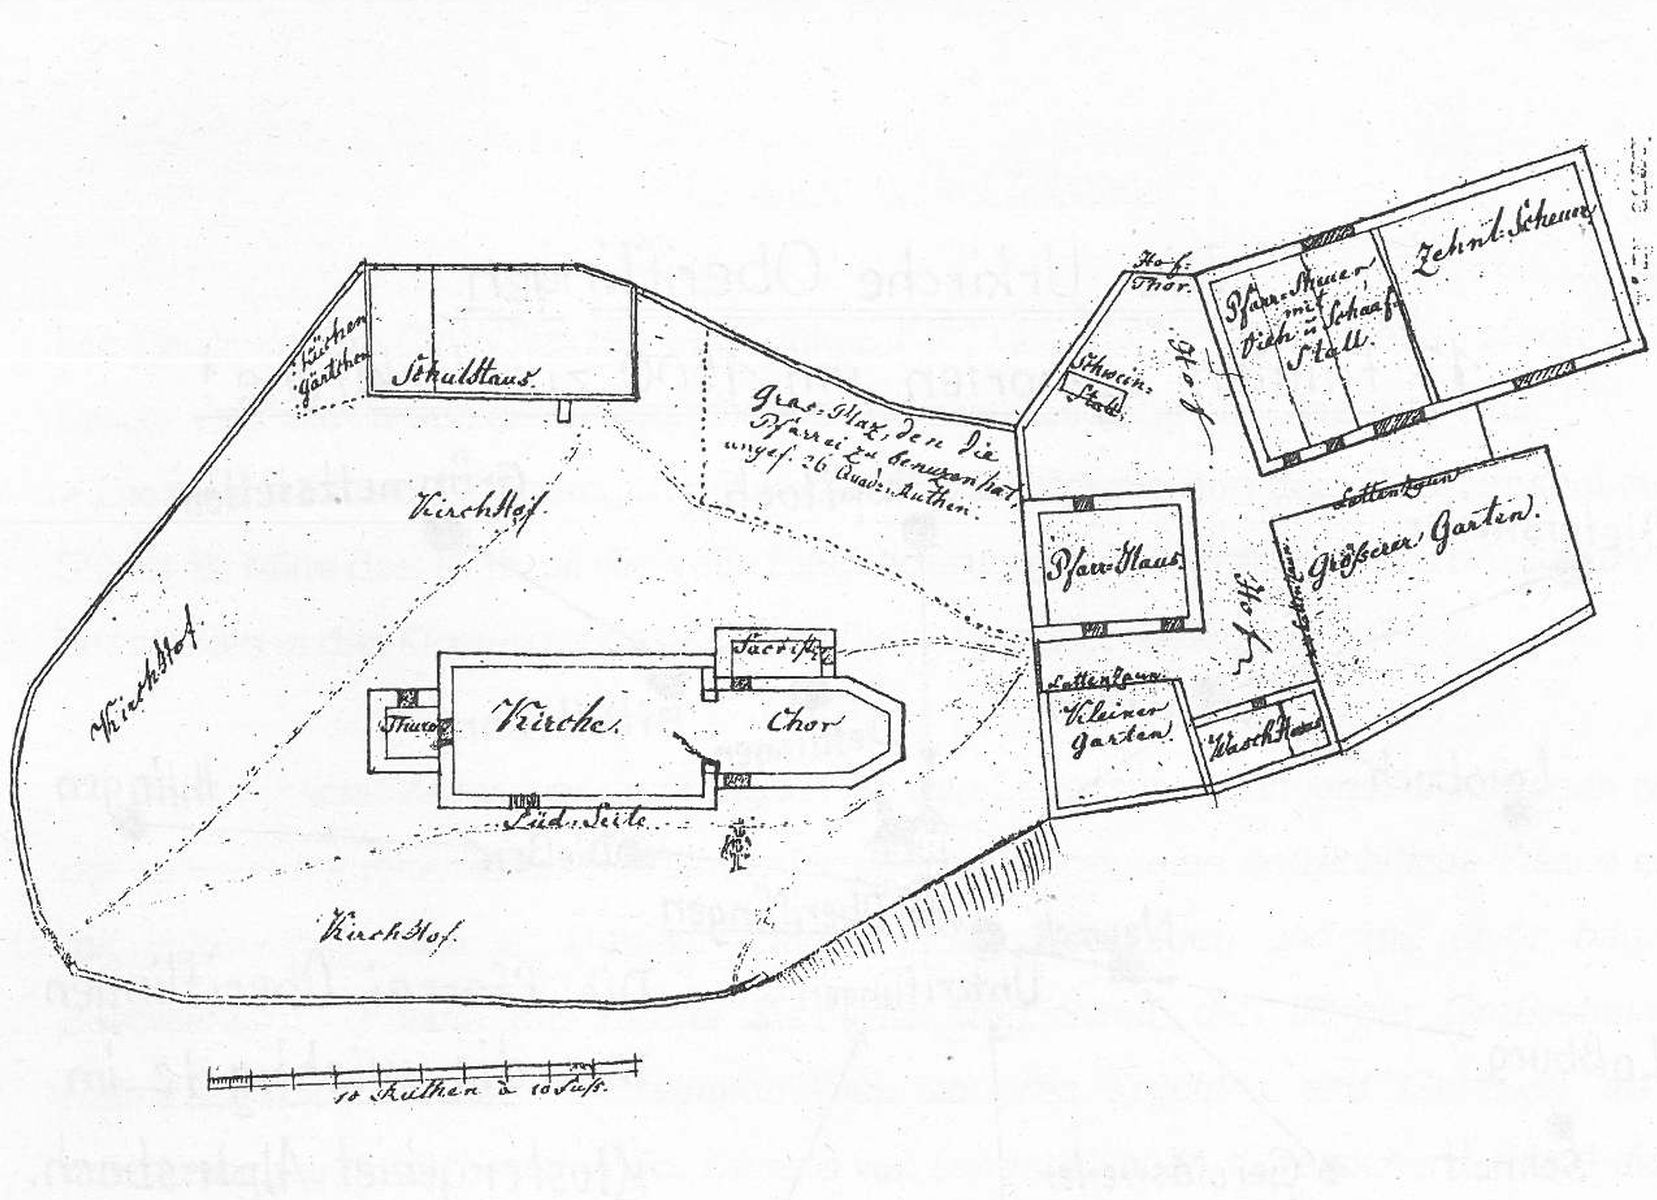  Schopflocher Skizzen Lageplan der Kirchenanlage - Bild wird mit einem klick vergrößert 